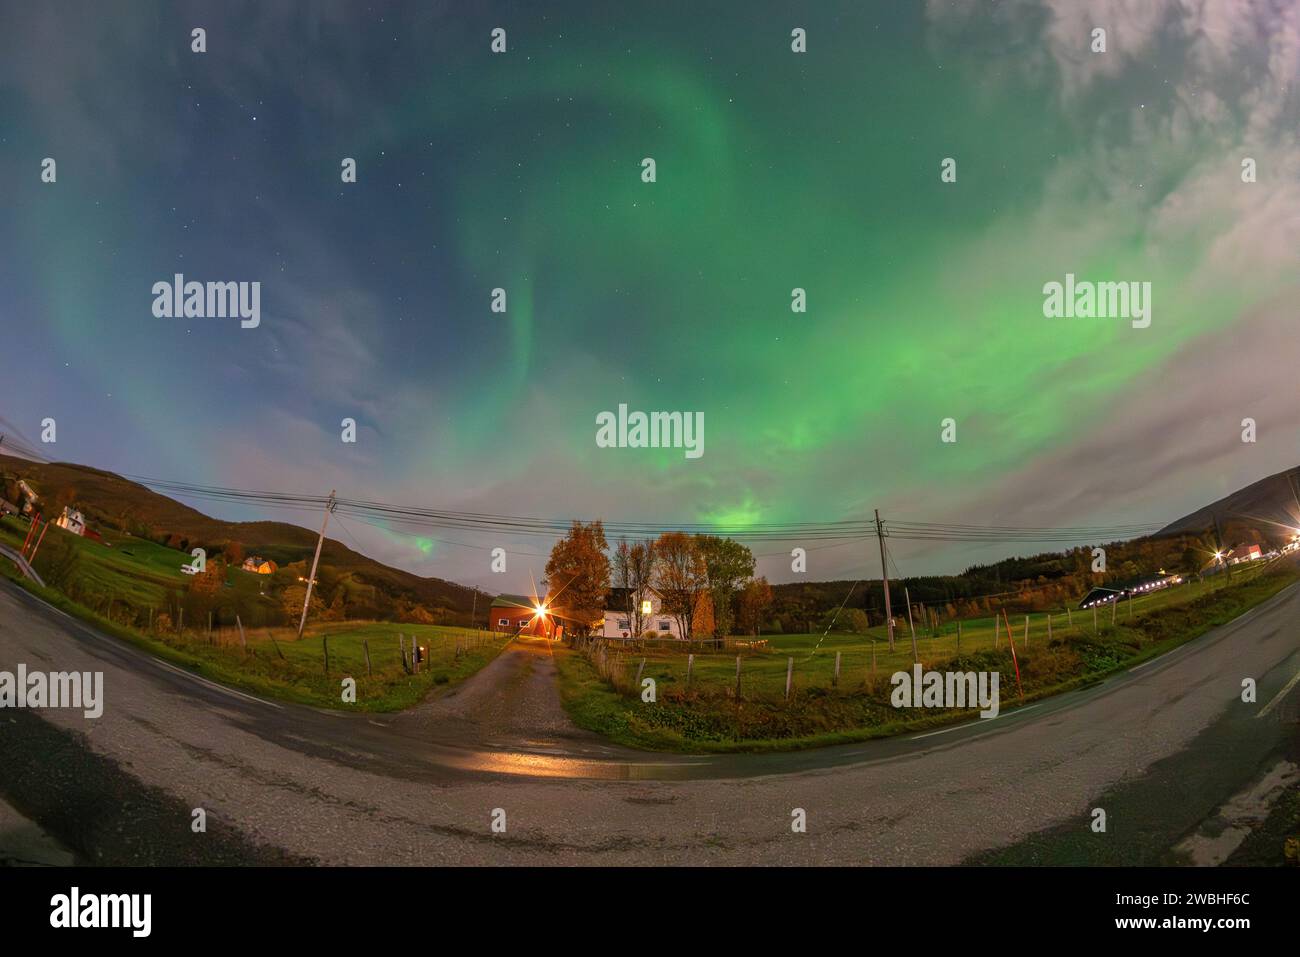 Hermosas luces verdes del norte sobre un fiordo y una casa en la isla de Kvaloya cerca de Tromsø. bailando luces polares sobre una montaña, aurora boreal Foto de stock